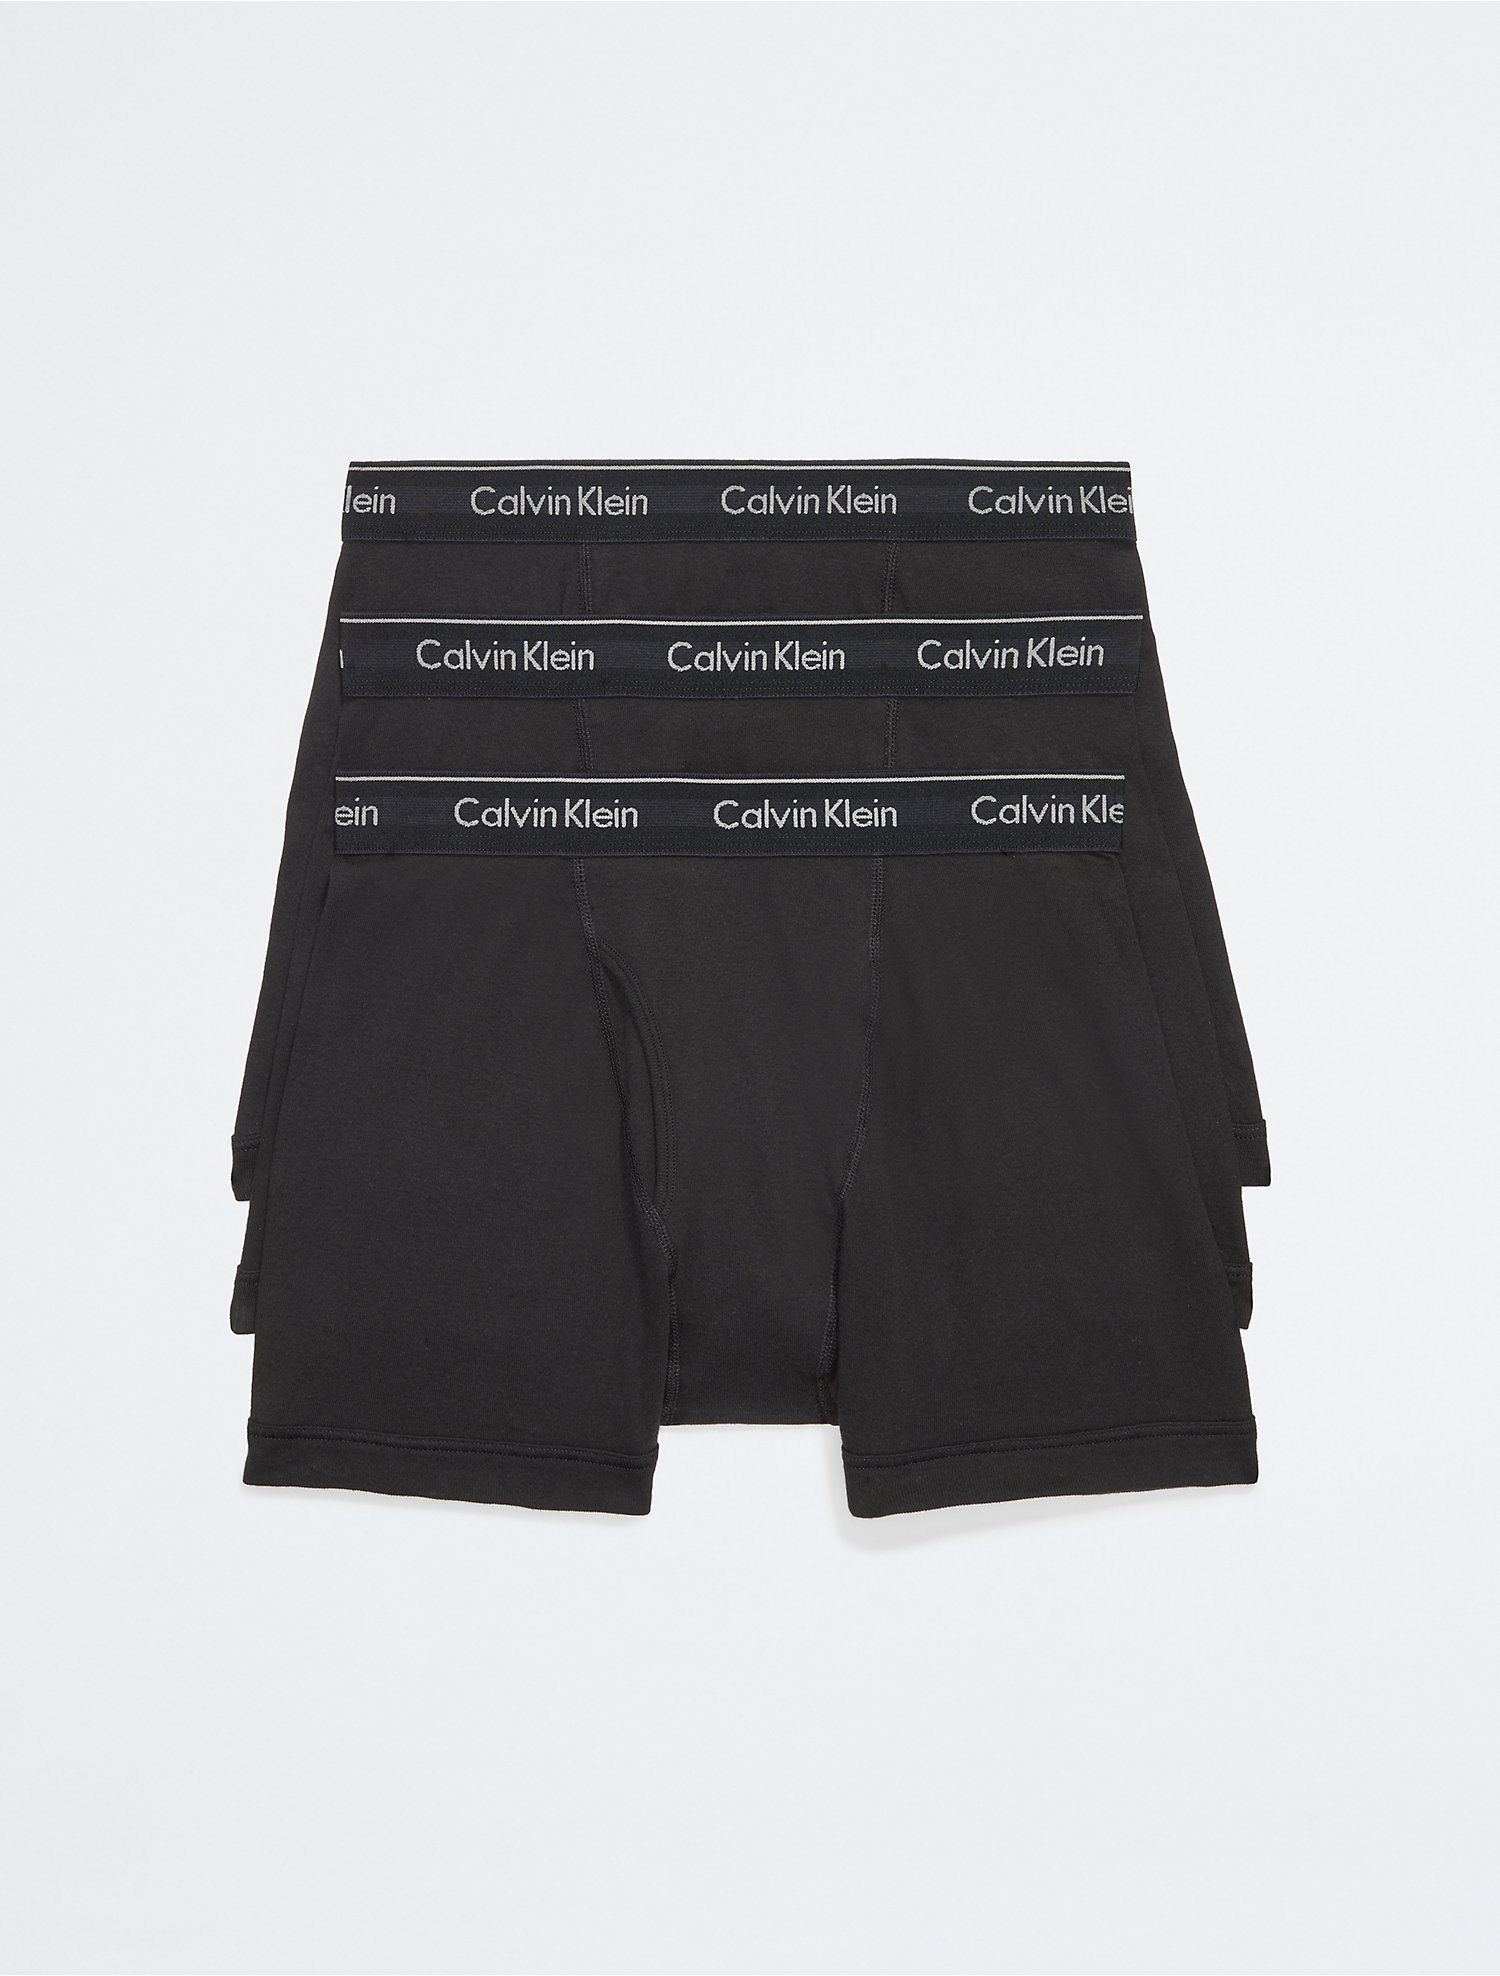 regular vapor buque de vapor Cotton Classics 3-Pack Boxer Brief | Calvin Klein